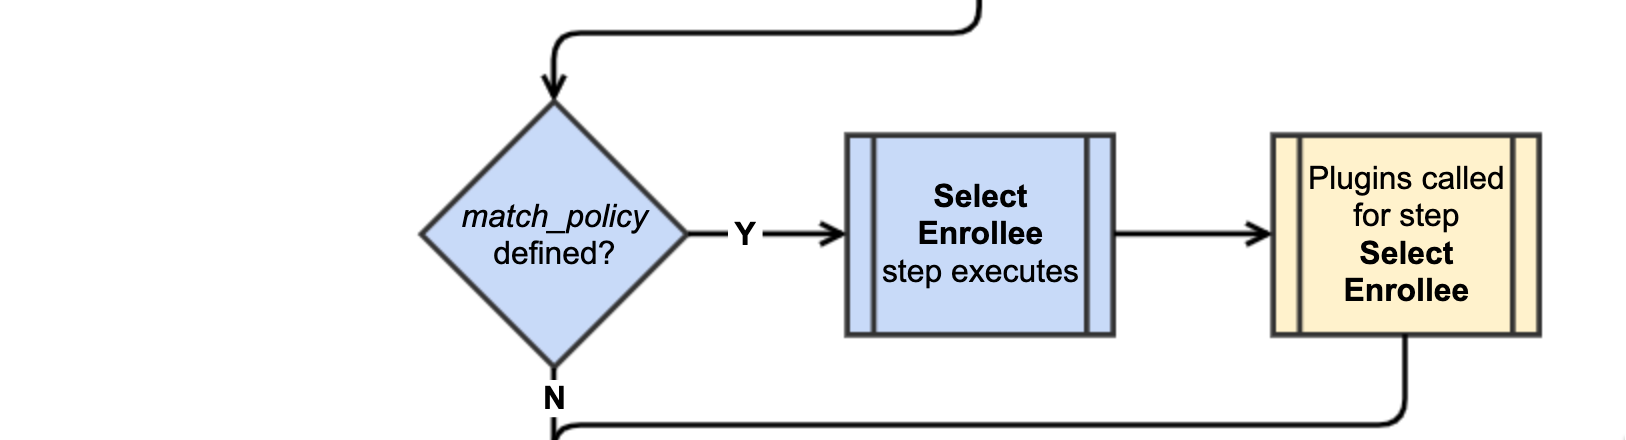 Step 2: Select Enrollee Flow diagram